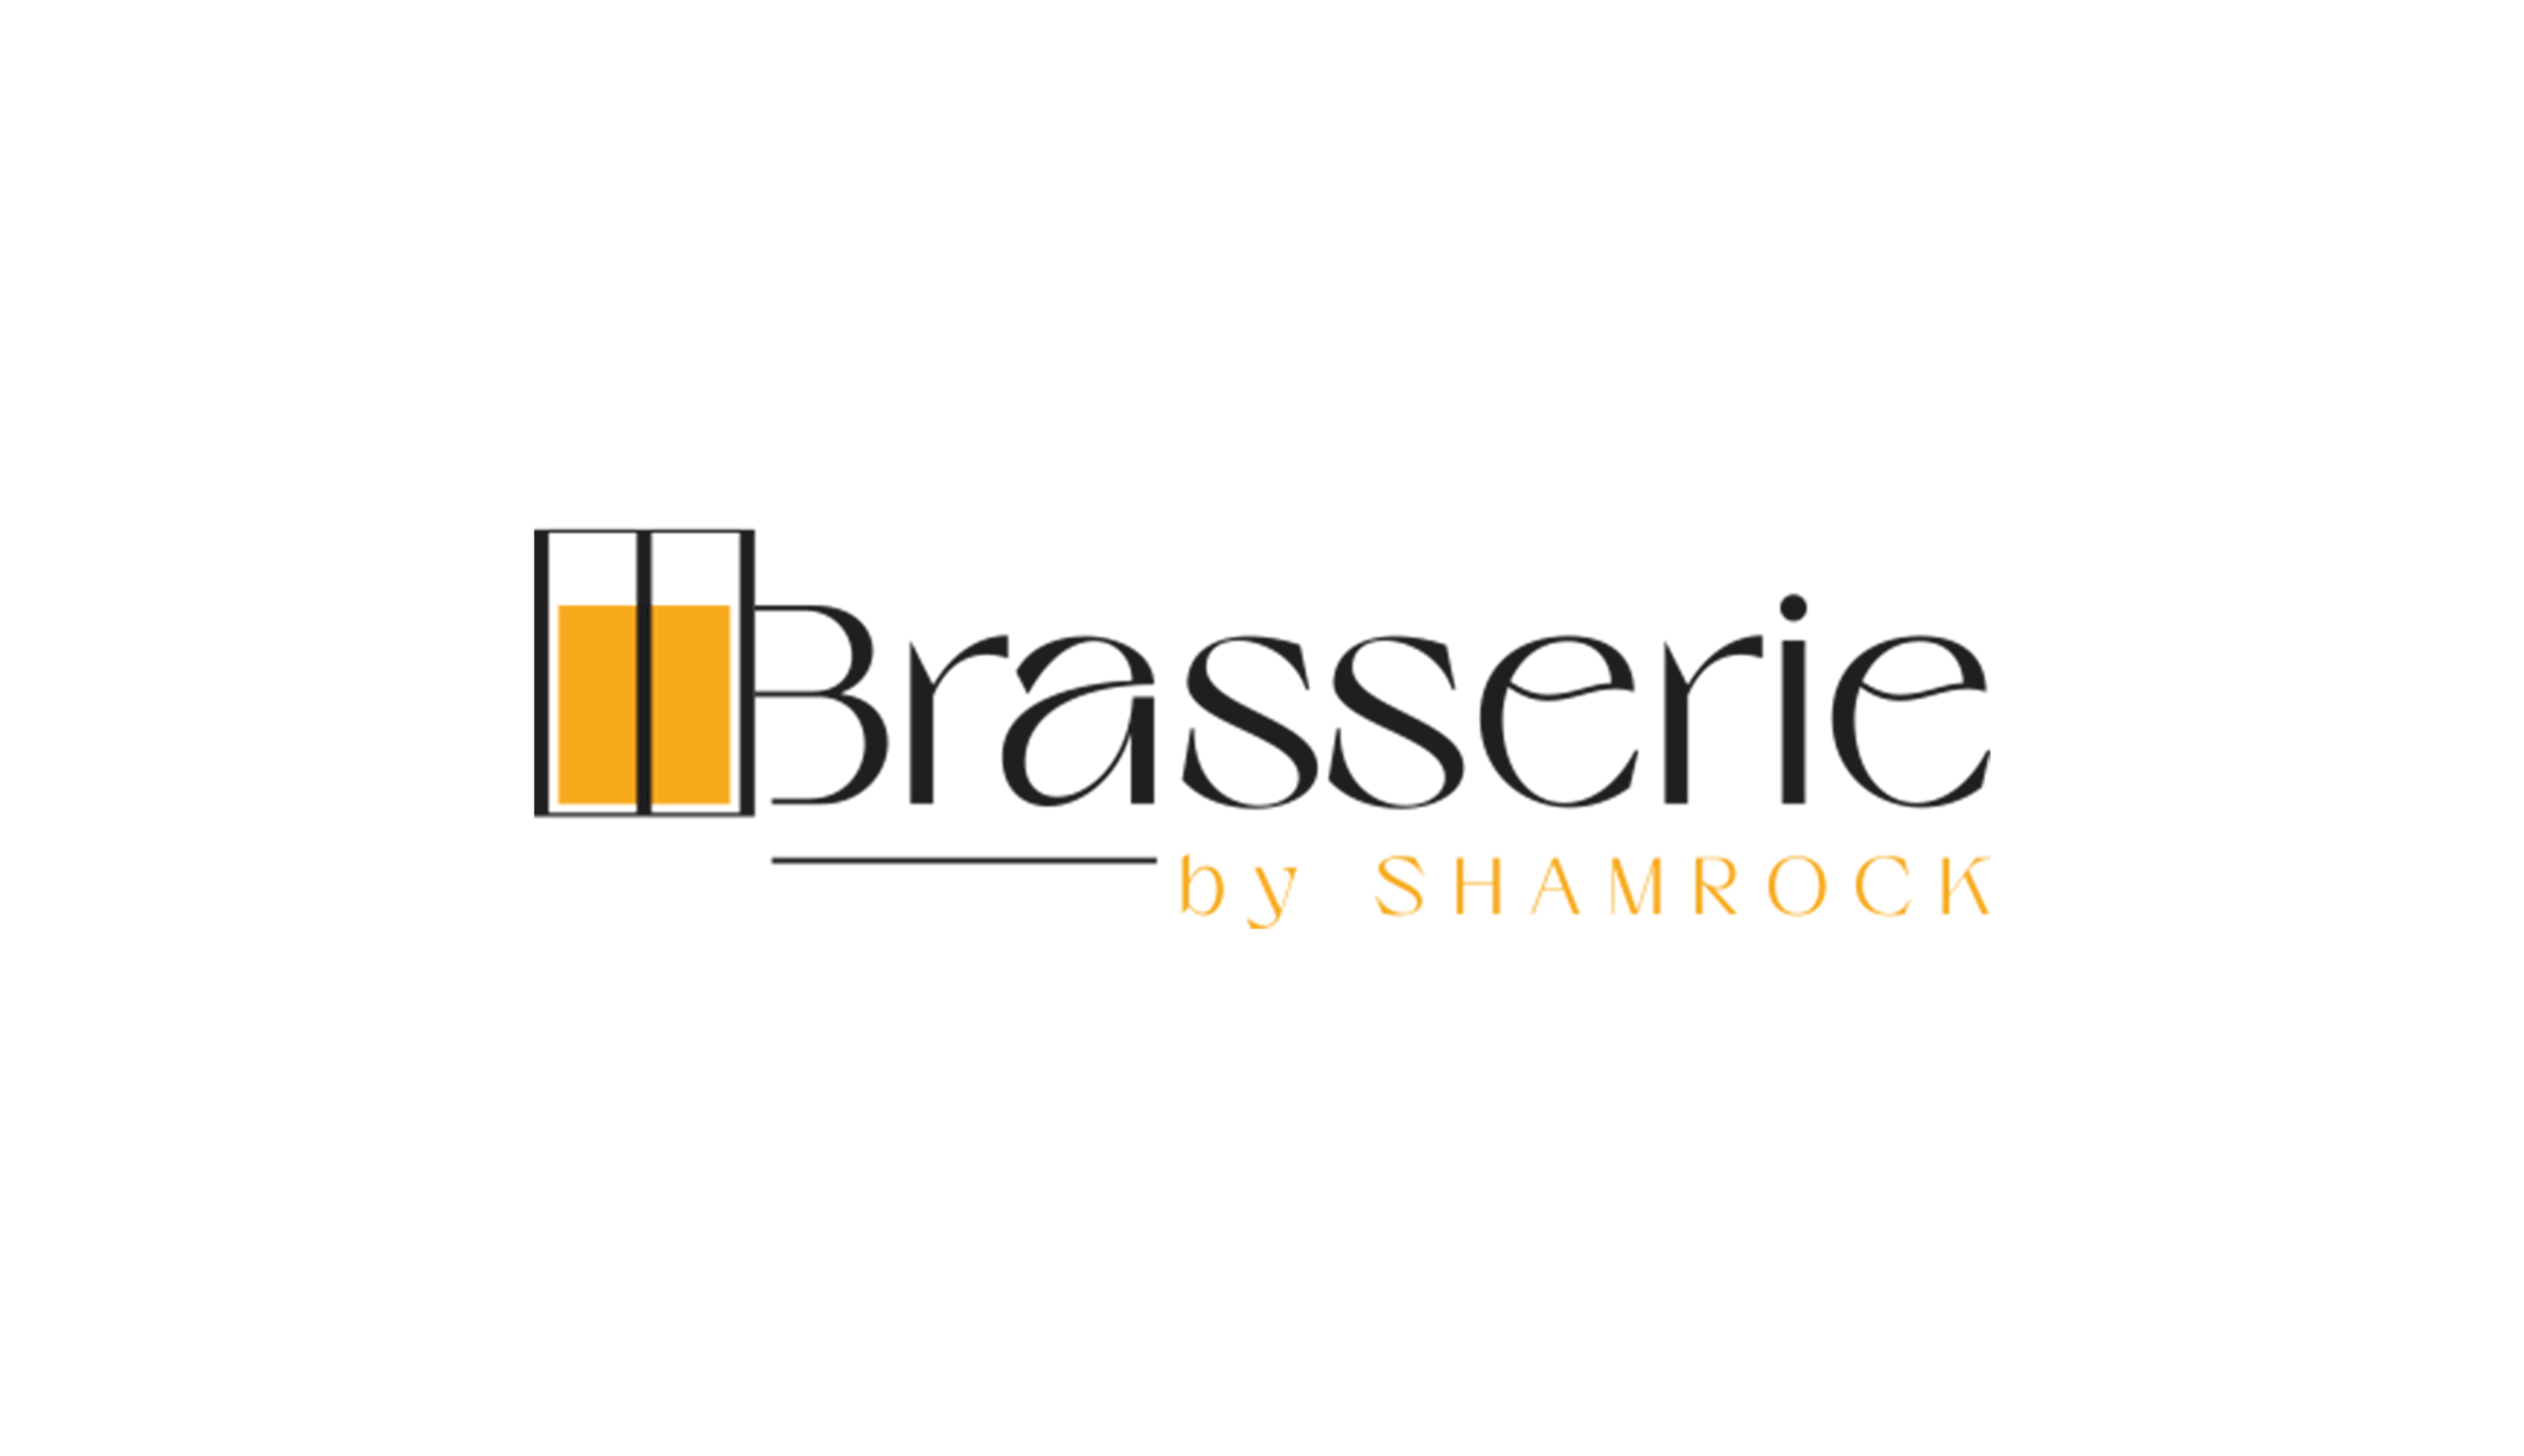 Brasserie by Shamrock